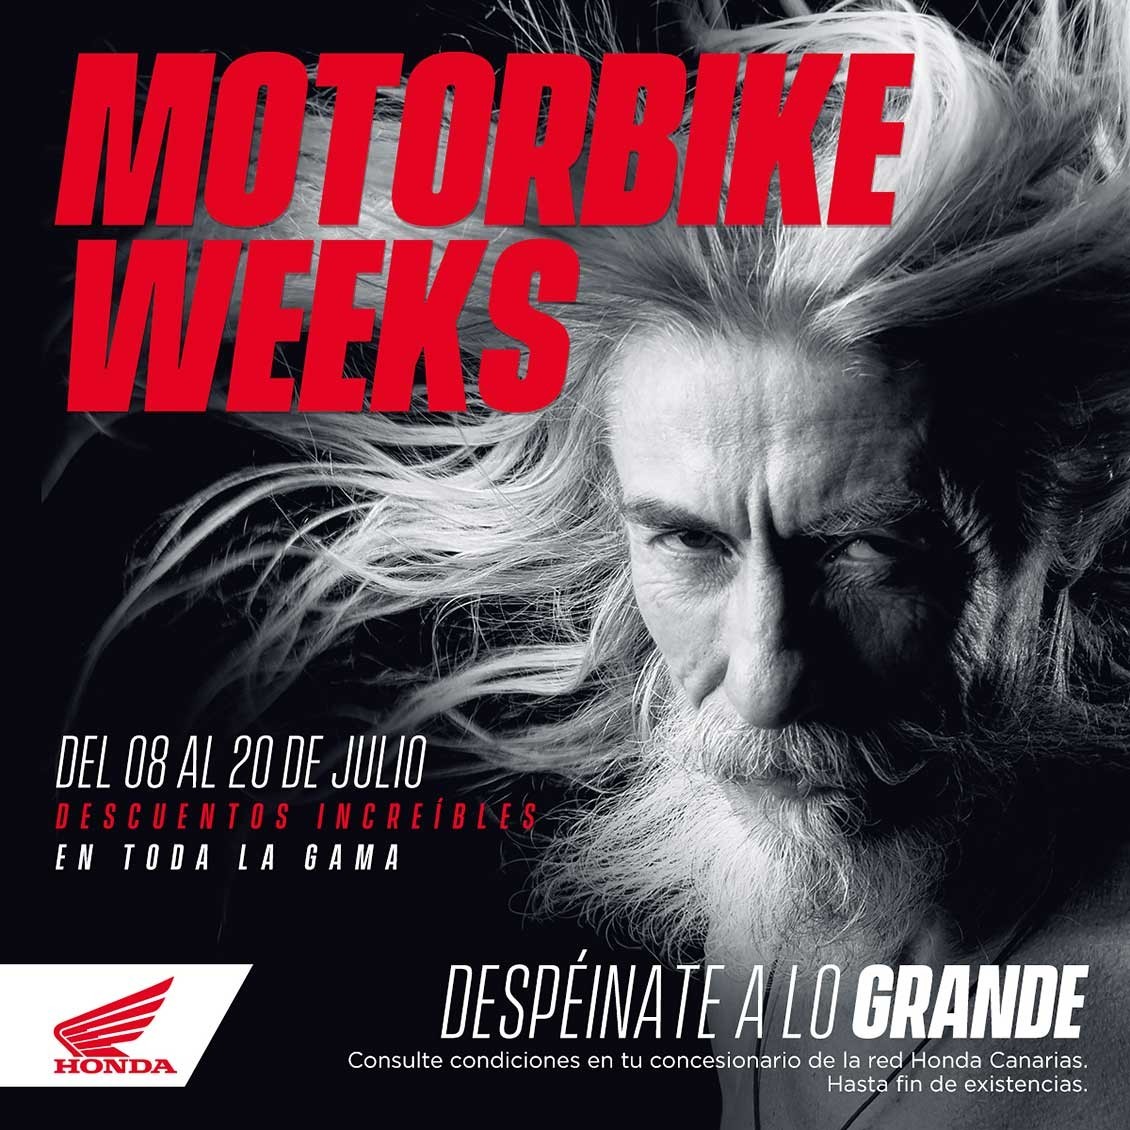 Dos semanas de precios especiales en toda la gama de Honda Motos.